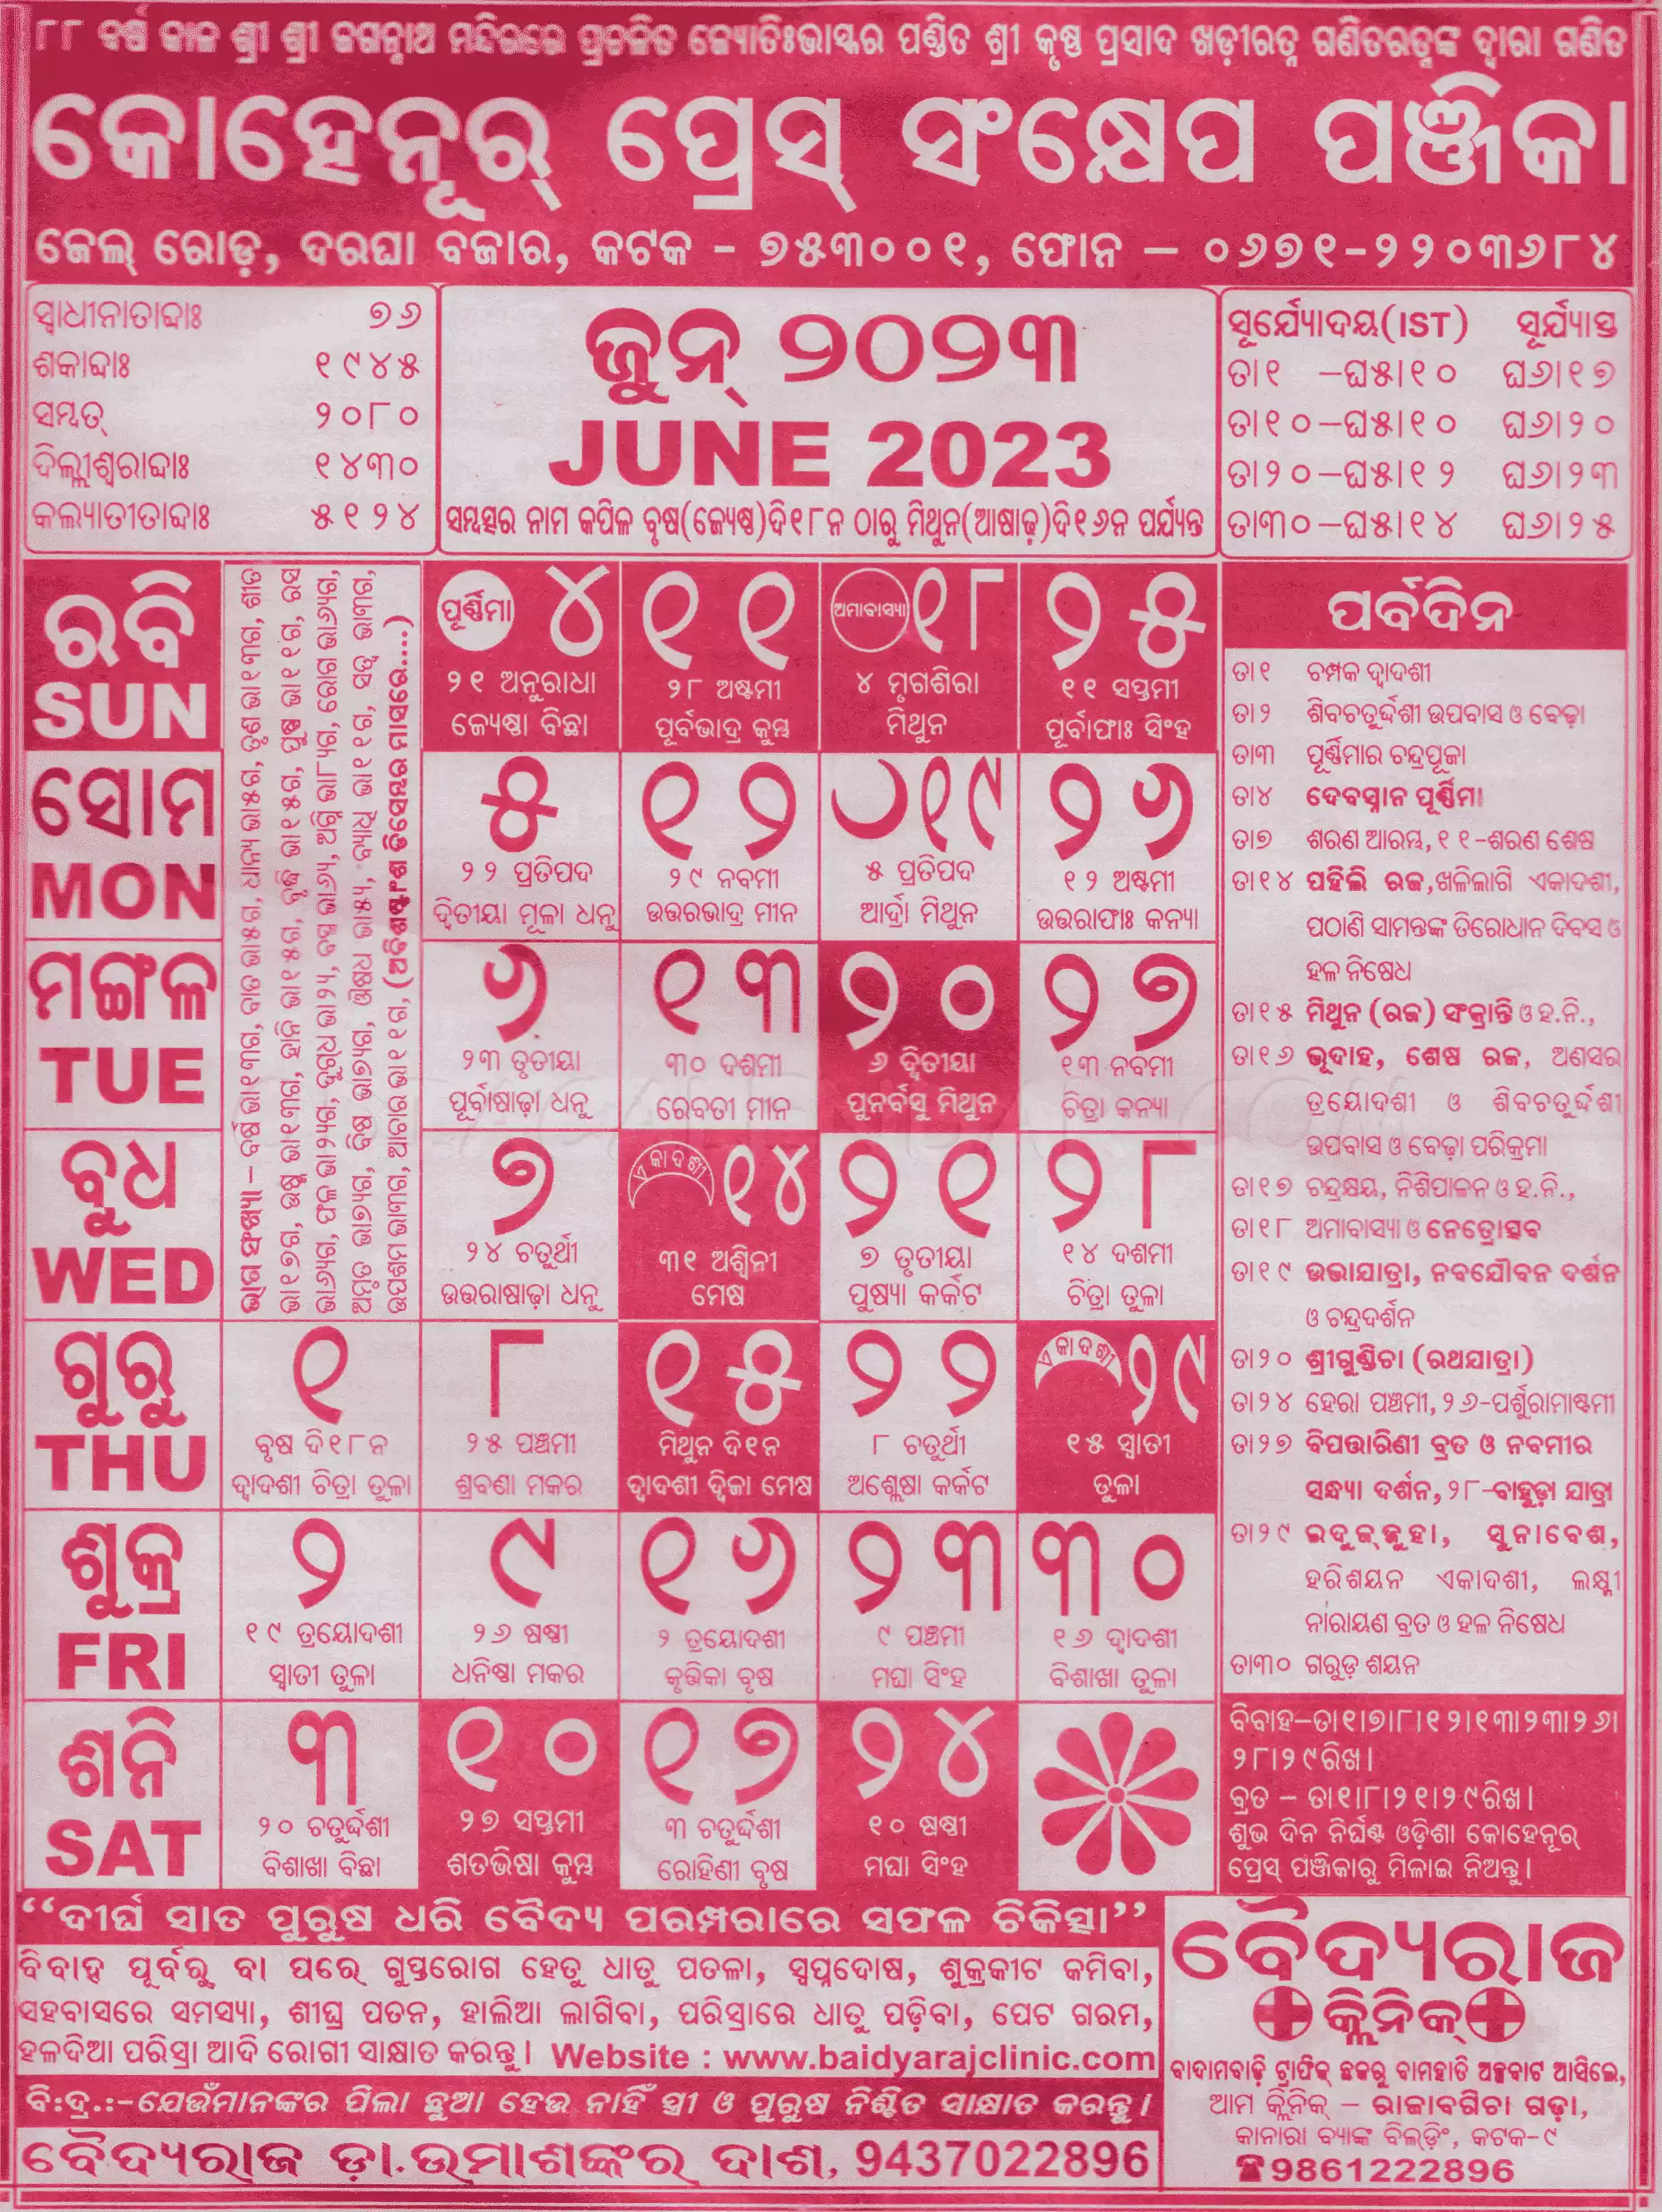 kohinoor calendar june 2023